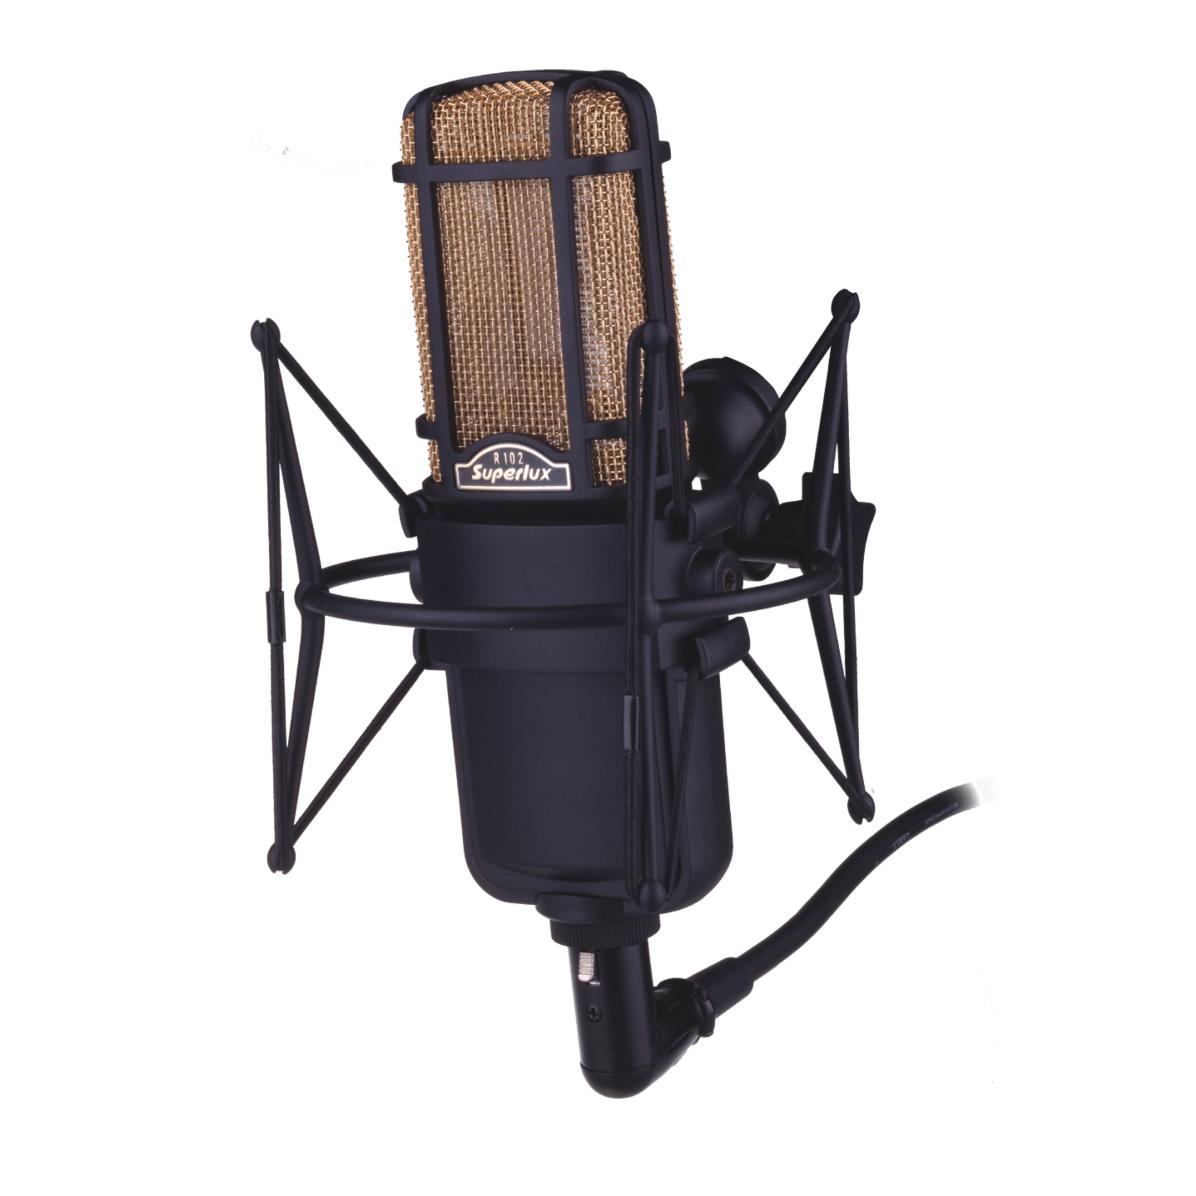 Ручные микрофоны Superlux R102 MKII ручные микрофоны superlux s125